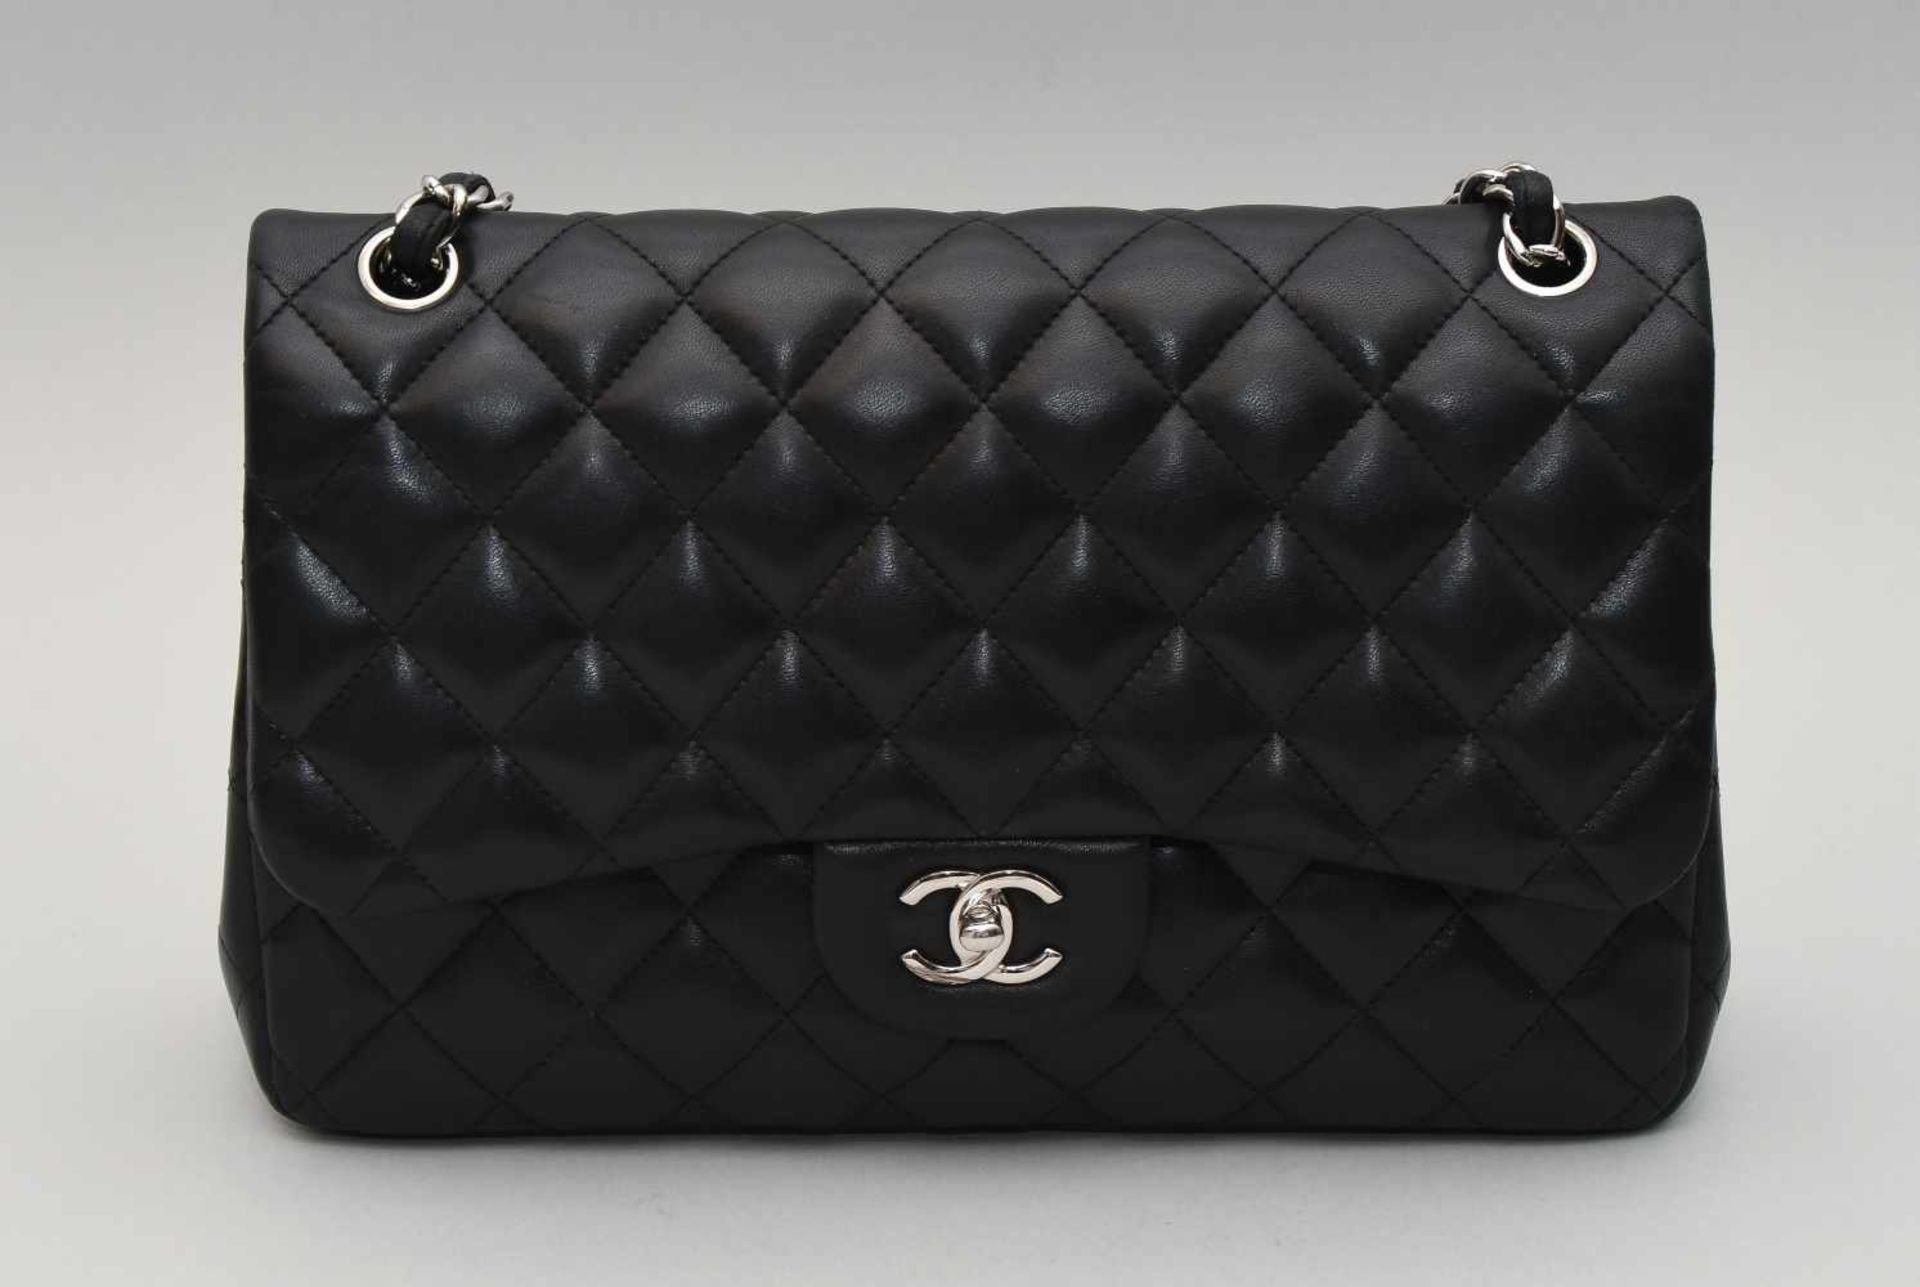 Chanel, Handtasche "Timeless" Jumbo Aus schwarzem Leder mit gestepptem Rautenmuster. - Bild 6 aus 13